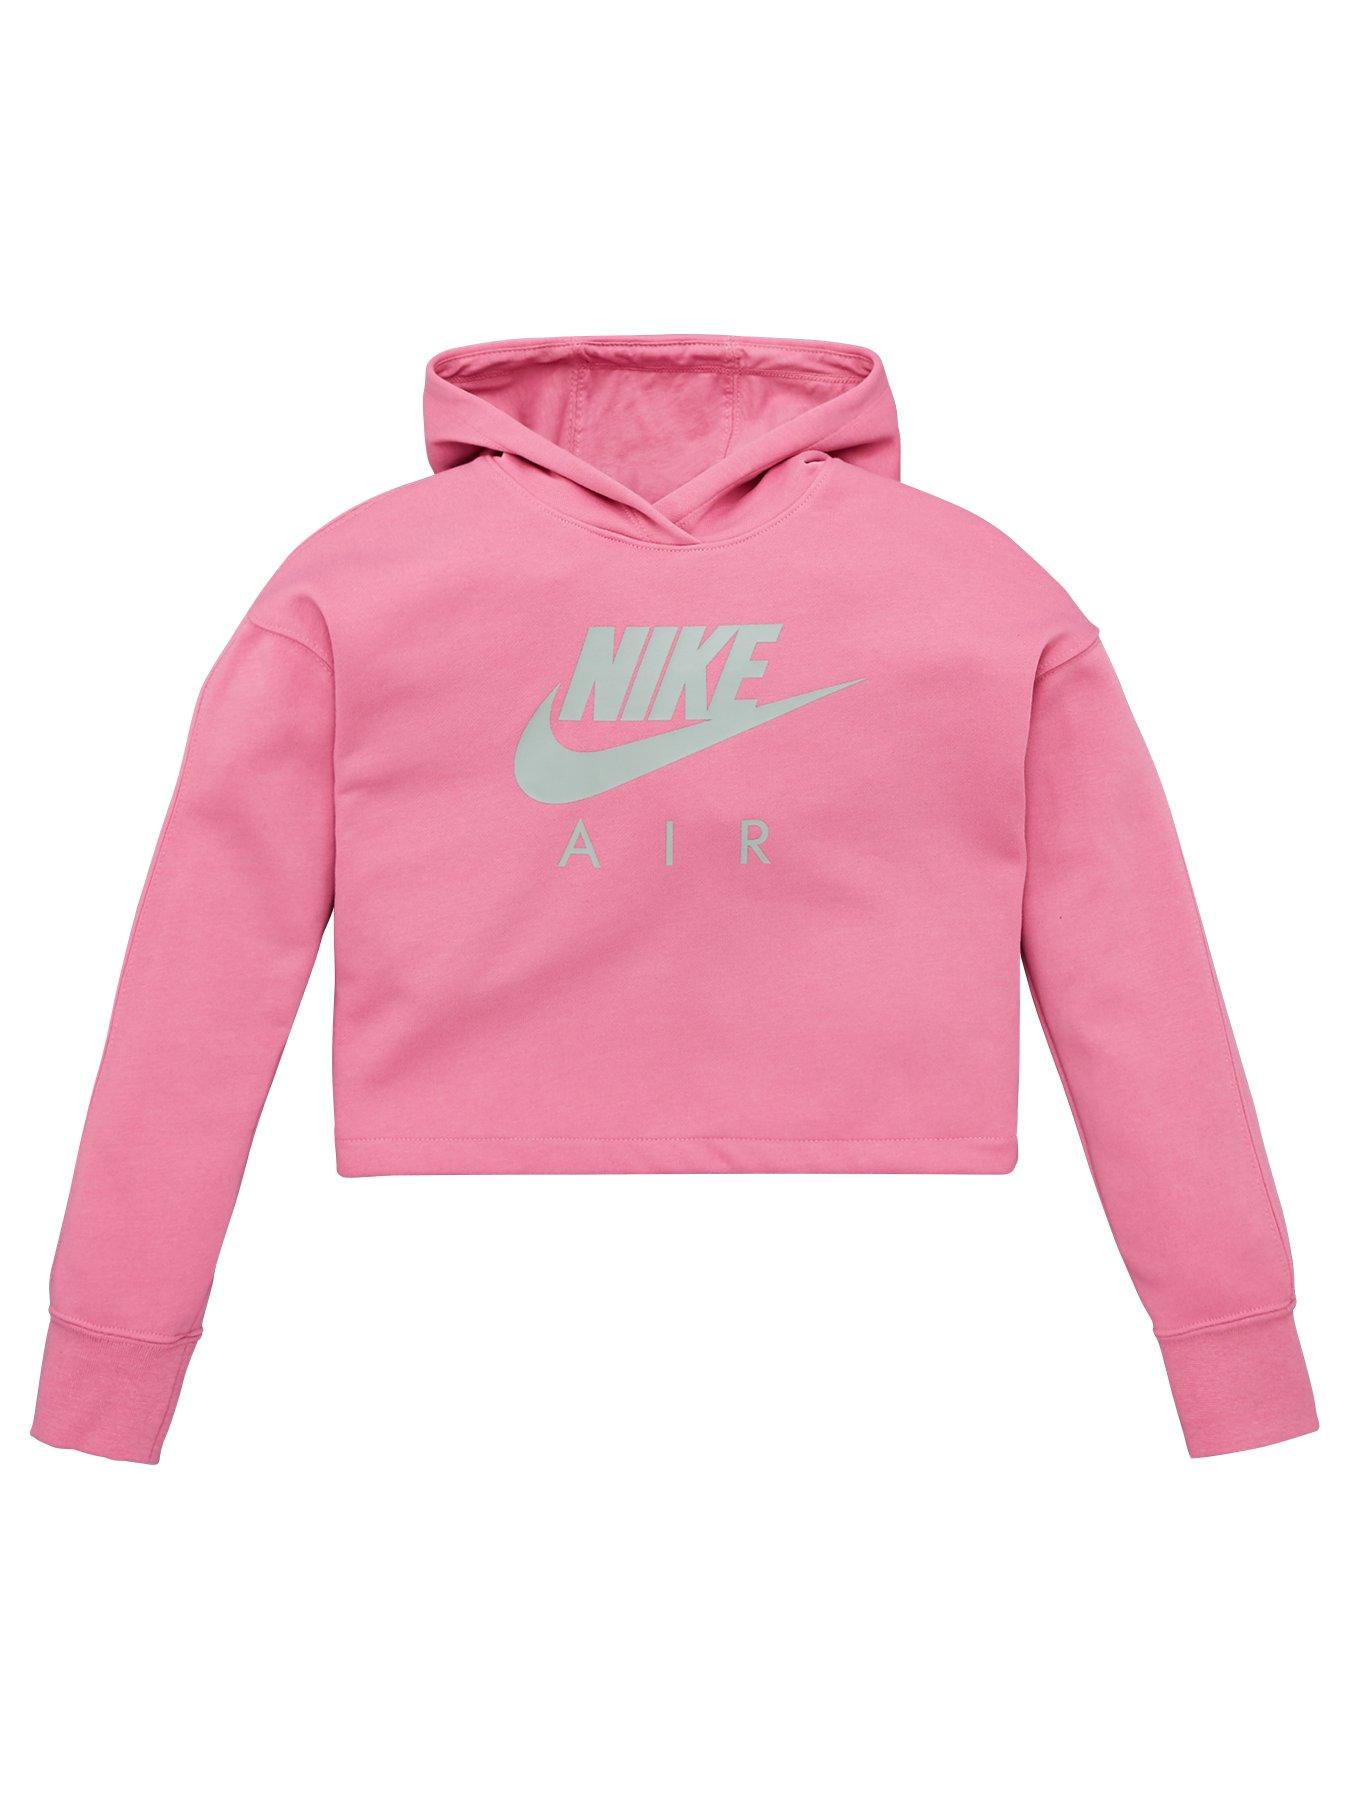 nike cropped hoodie pink